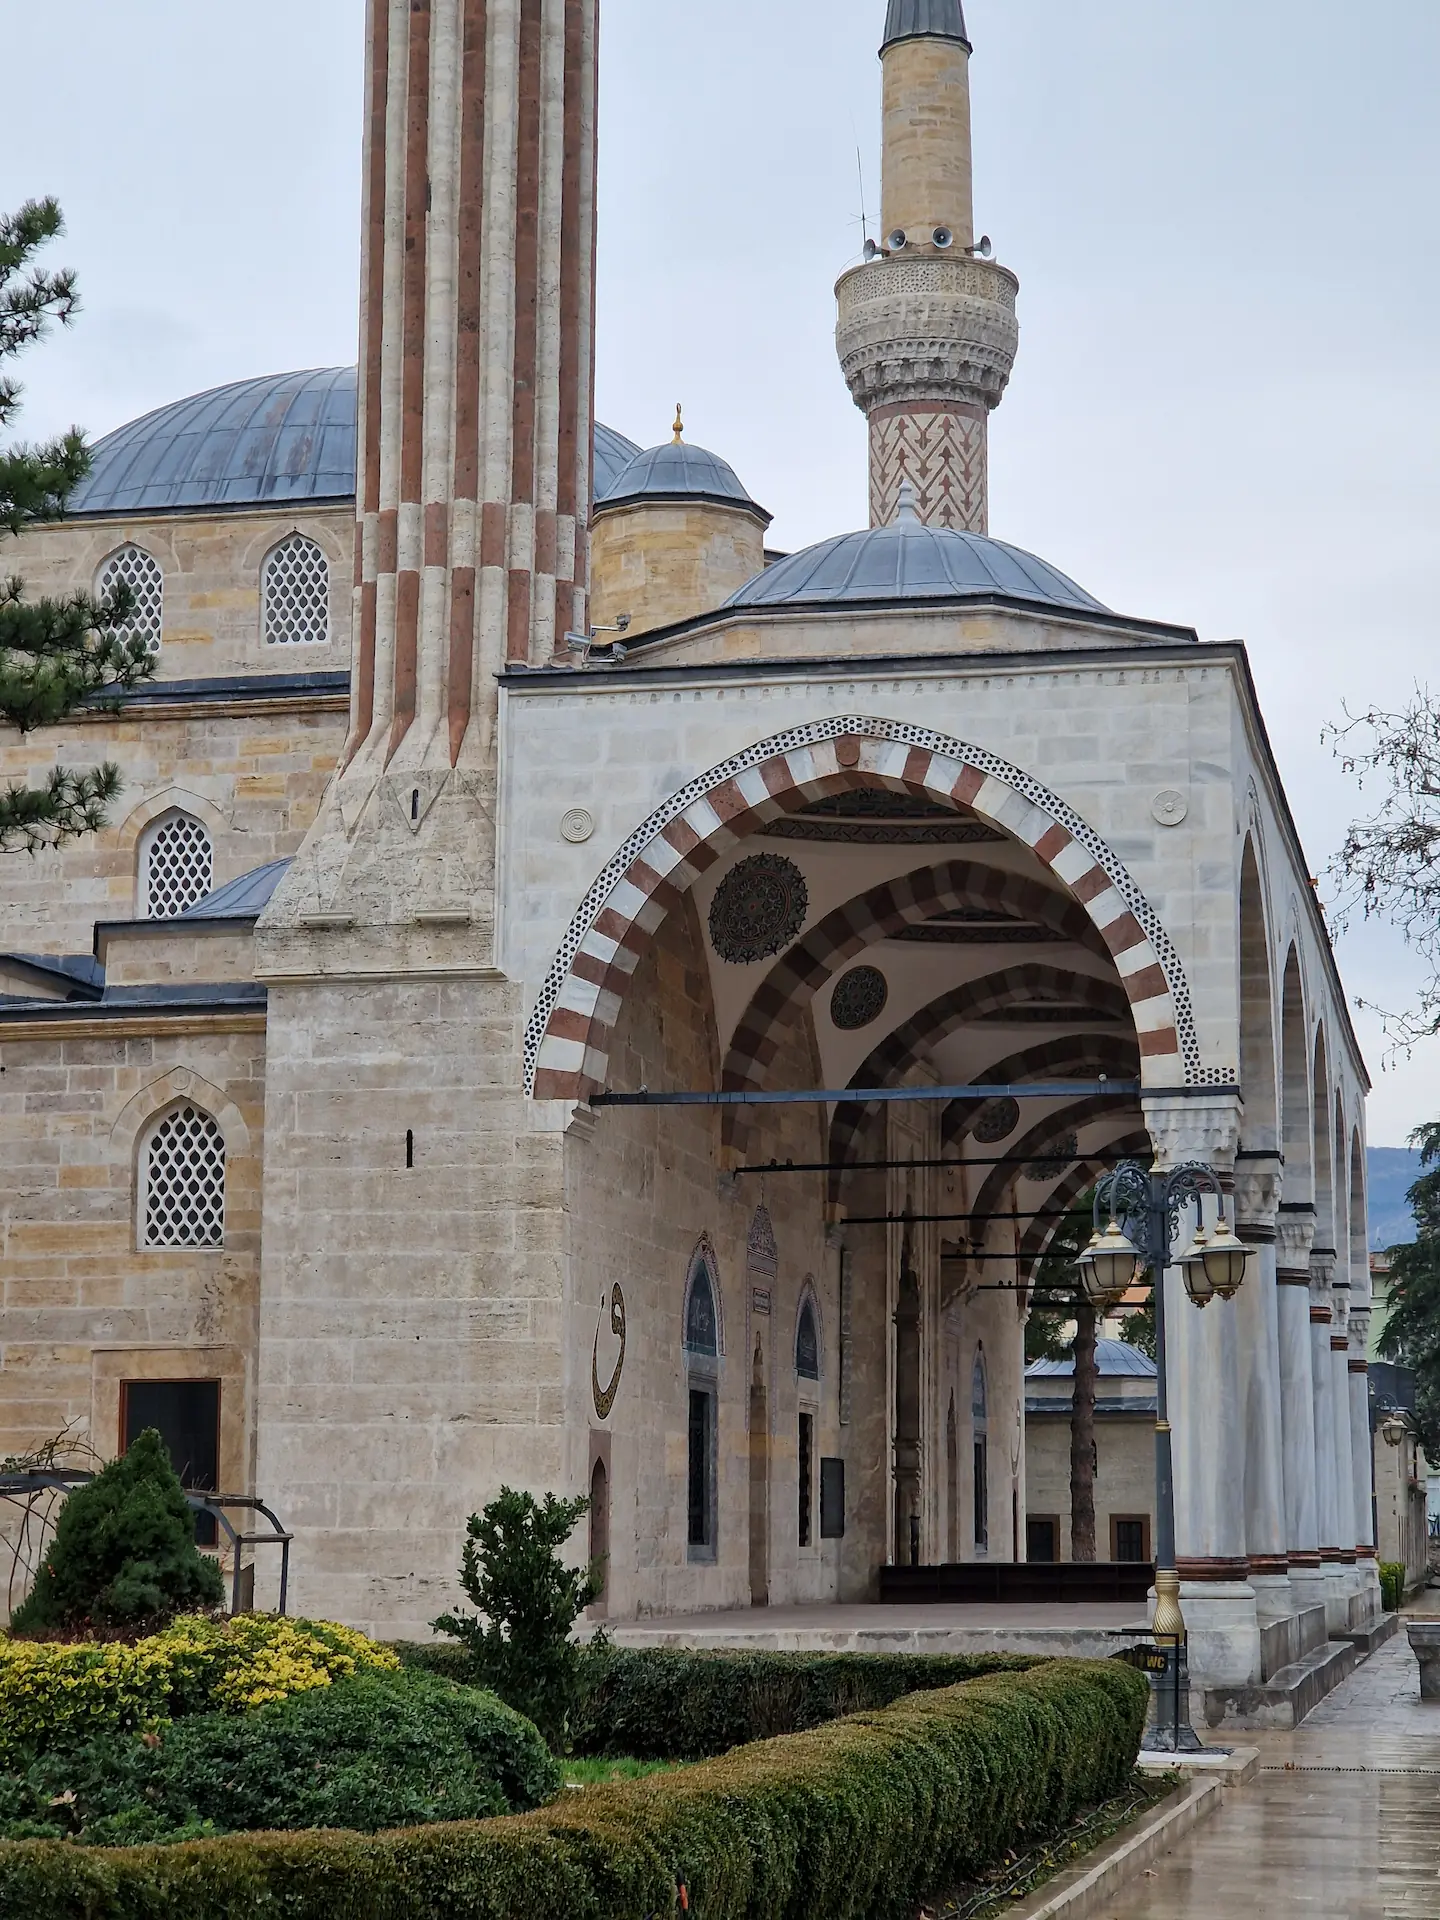 La mosquée d'Amasya vue de côté